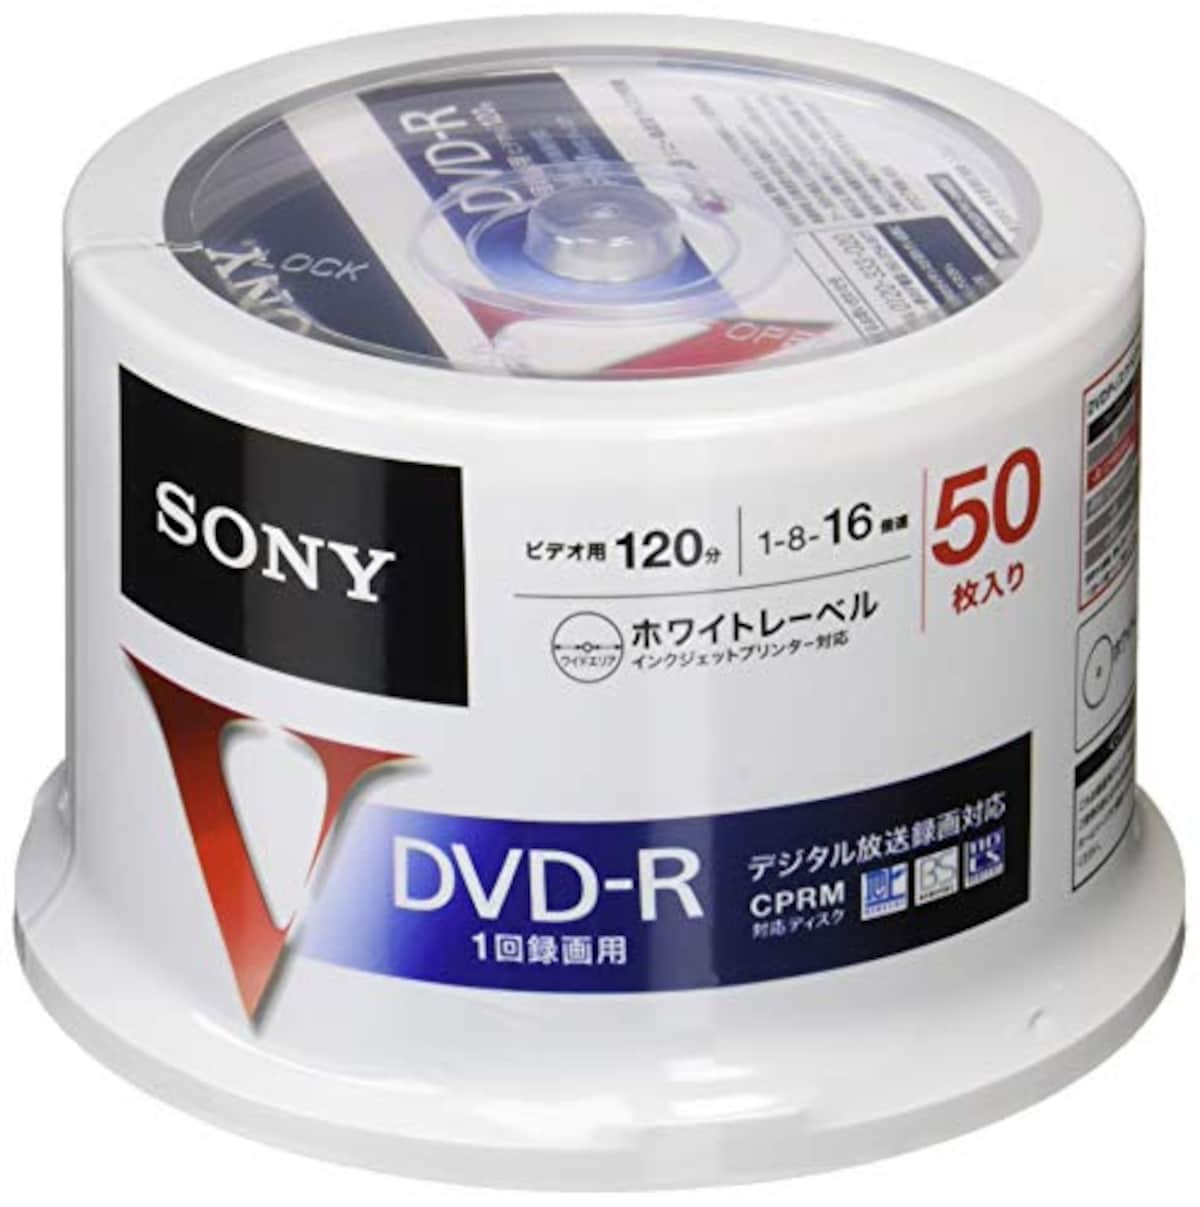 録画用DVD-R CPRM対応 120分 16倍速 50枚パック